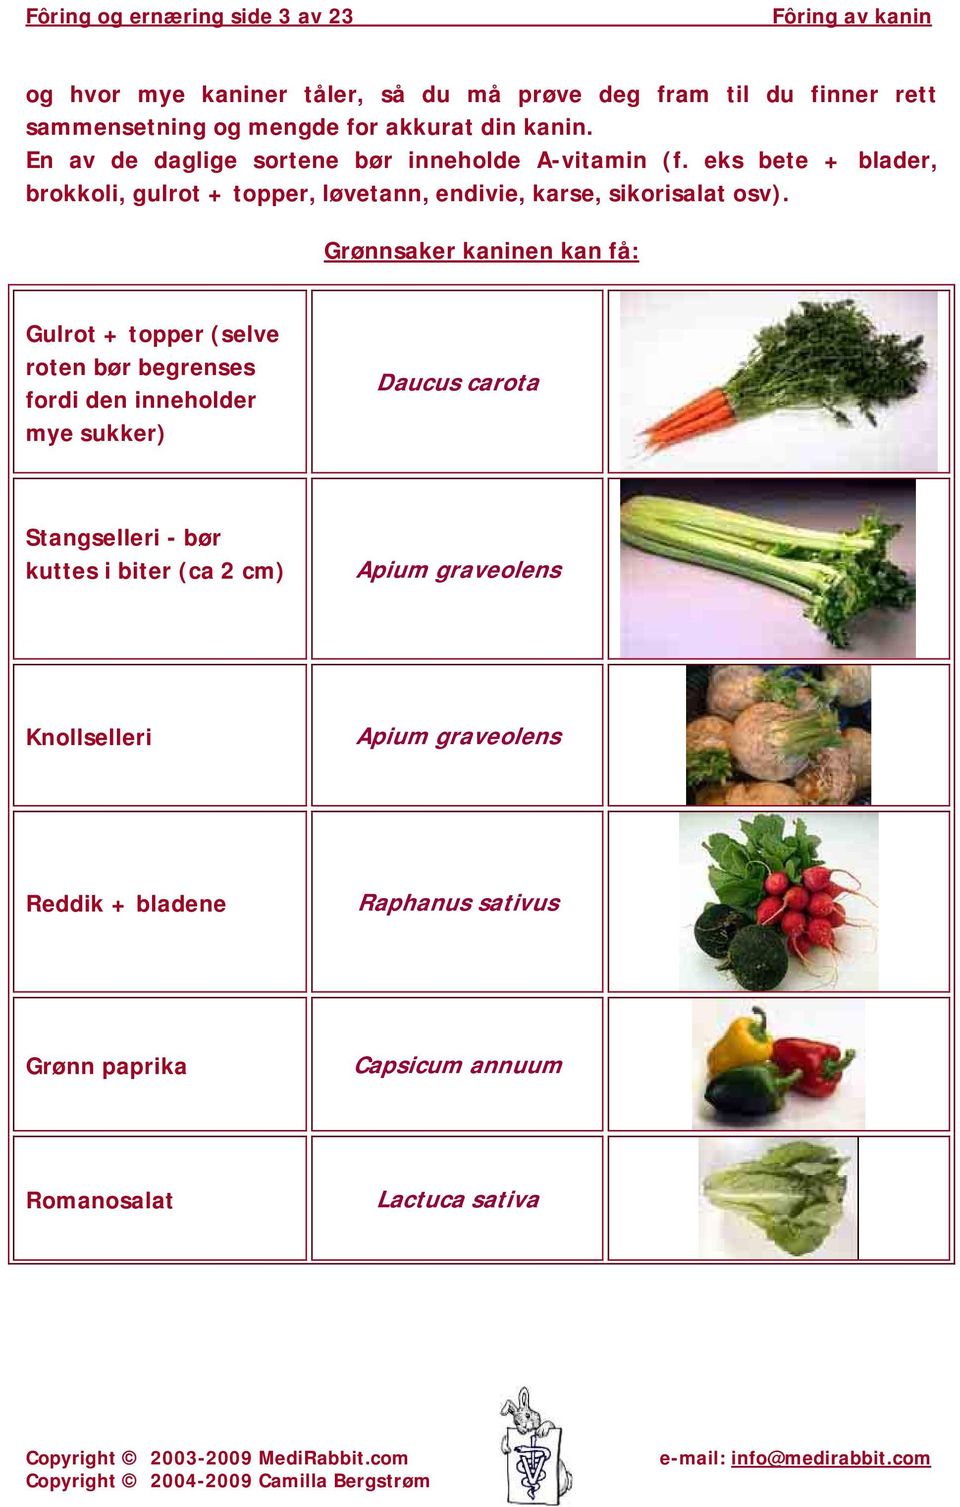 Grønnsaker en kan få: Gulrot + topper (selve roten bør begrenses fordi den inneholder mye sukker) Daucus carota Stangselleri - bør kuttes i